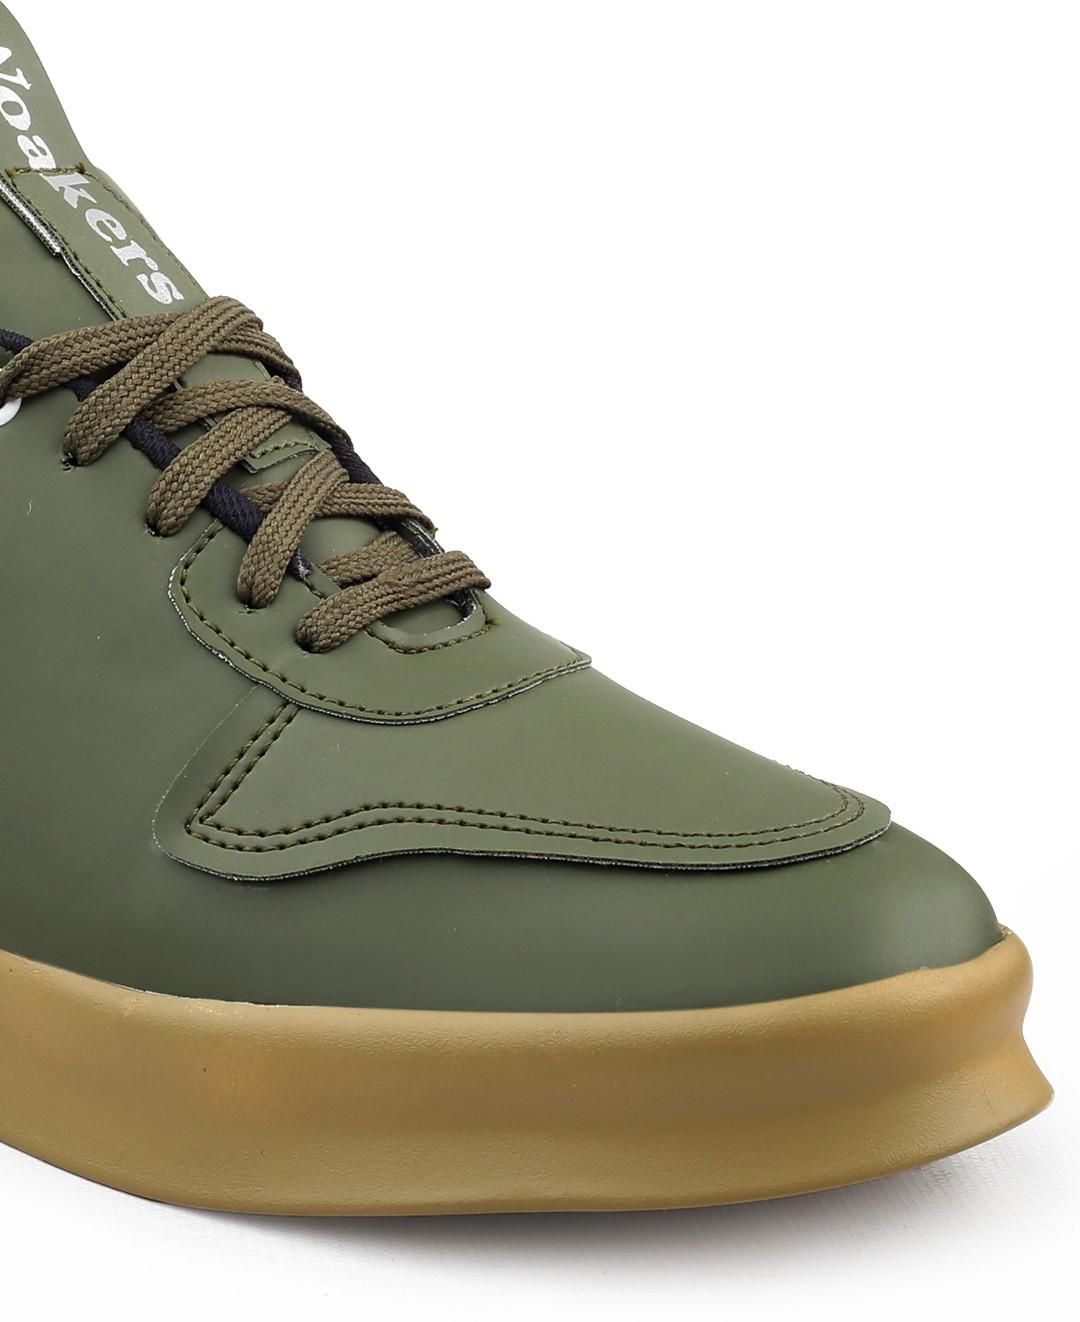 Woakers Green Men's Casual Sneakers